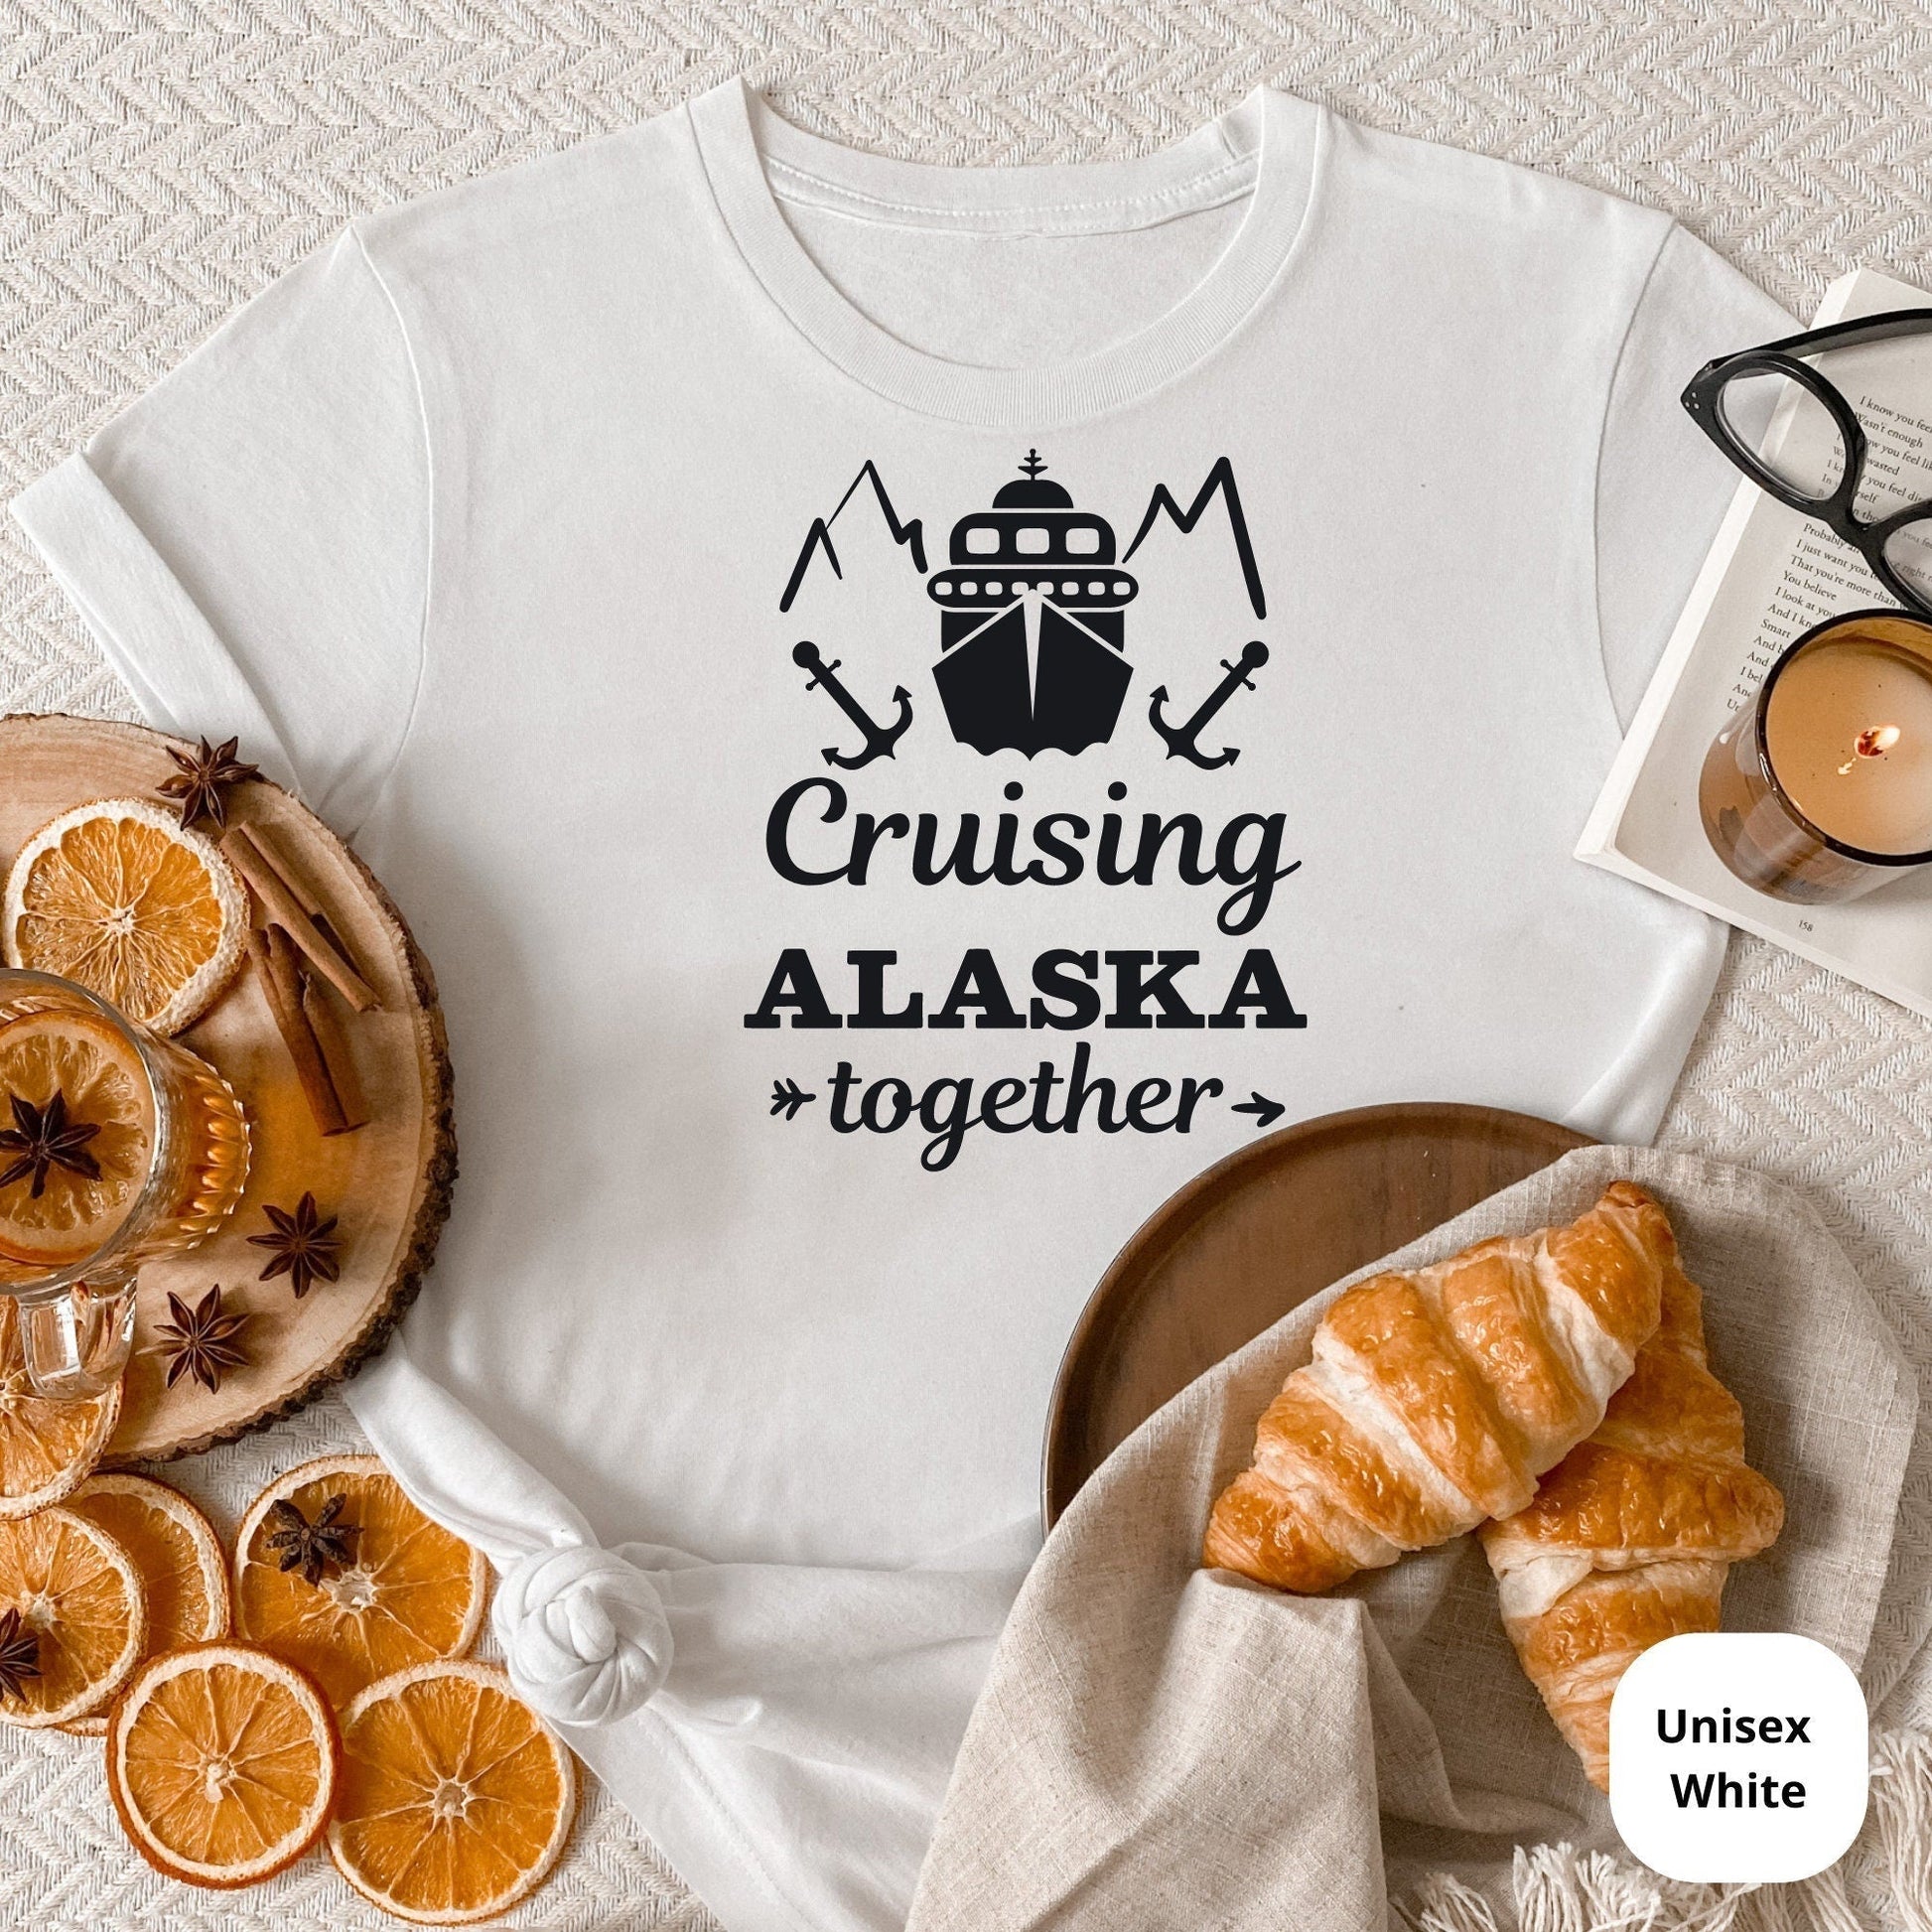 Alaskan Cruise Shirts